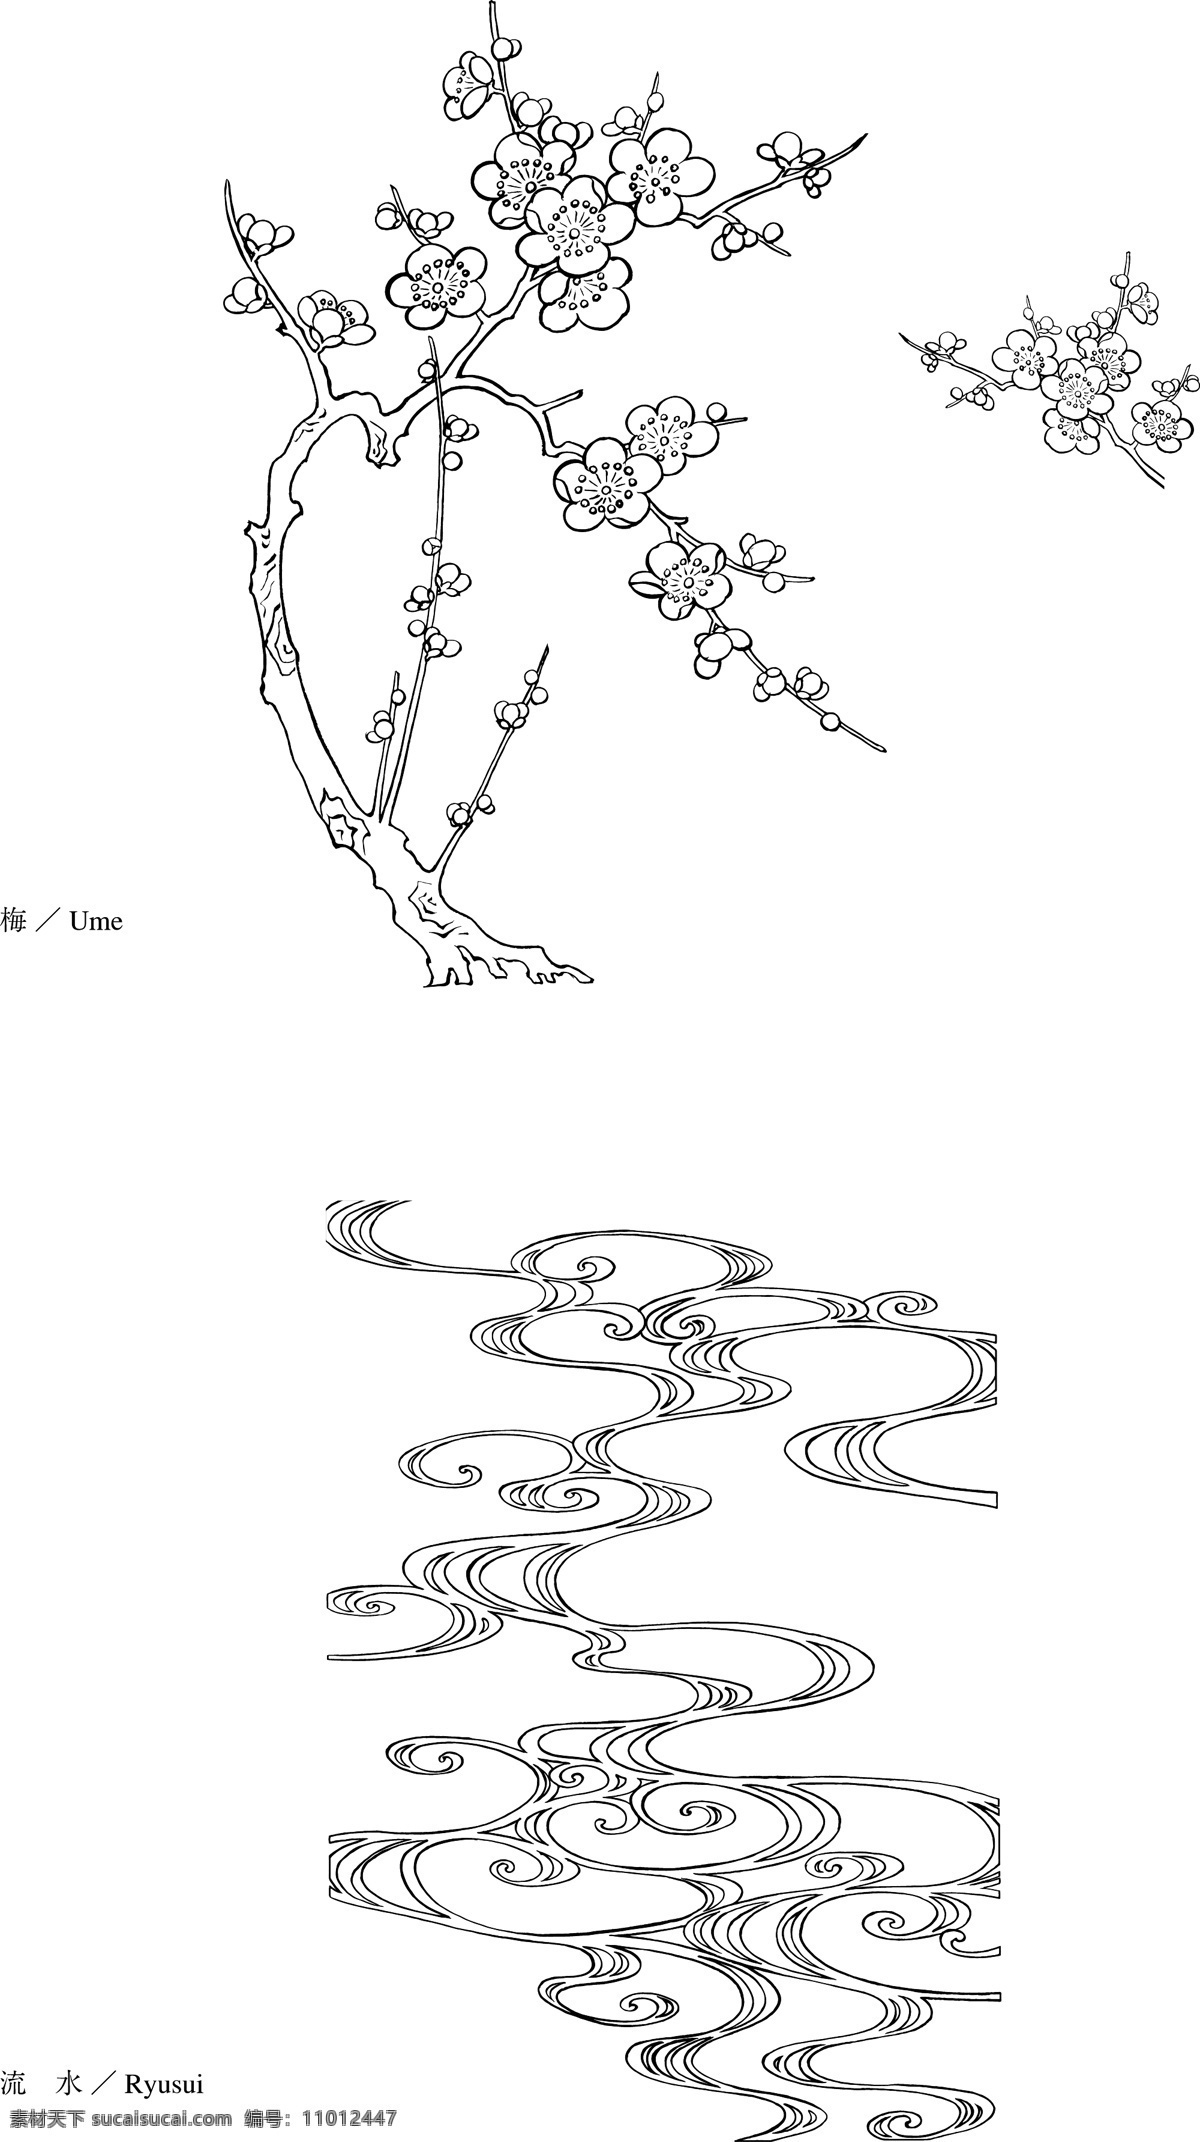 矢量 线 绘制 flowers 梅花 流动 水 花 绘图 流动的水 其他载体 矢量图 其他矢量图